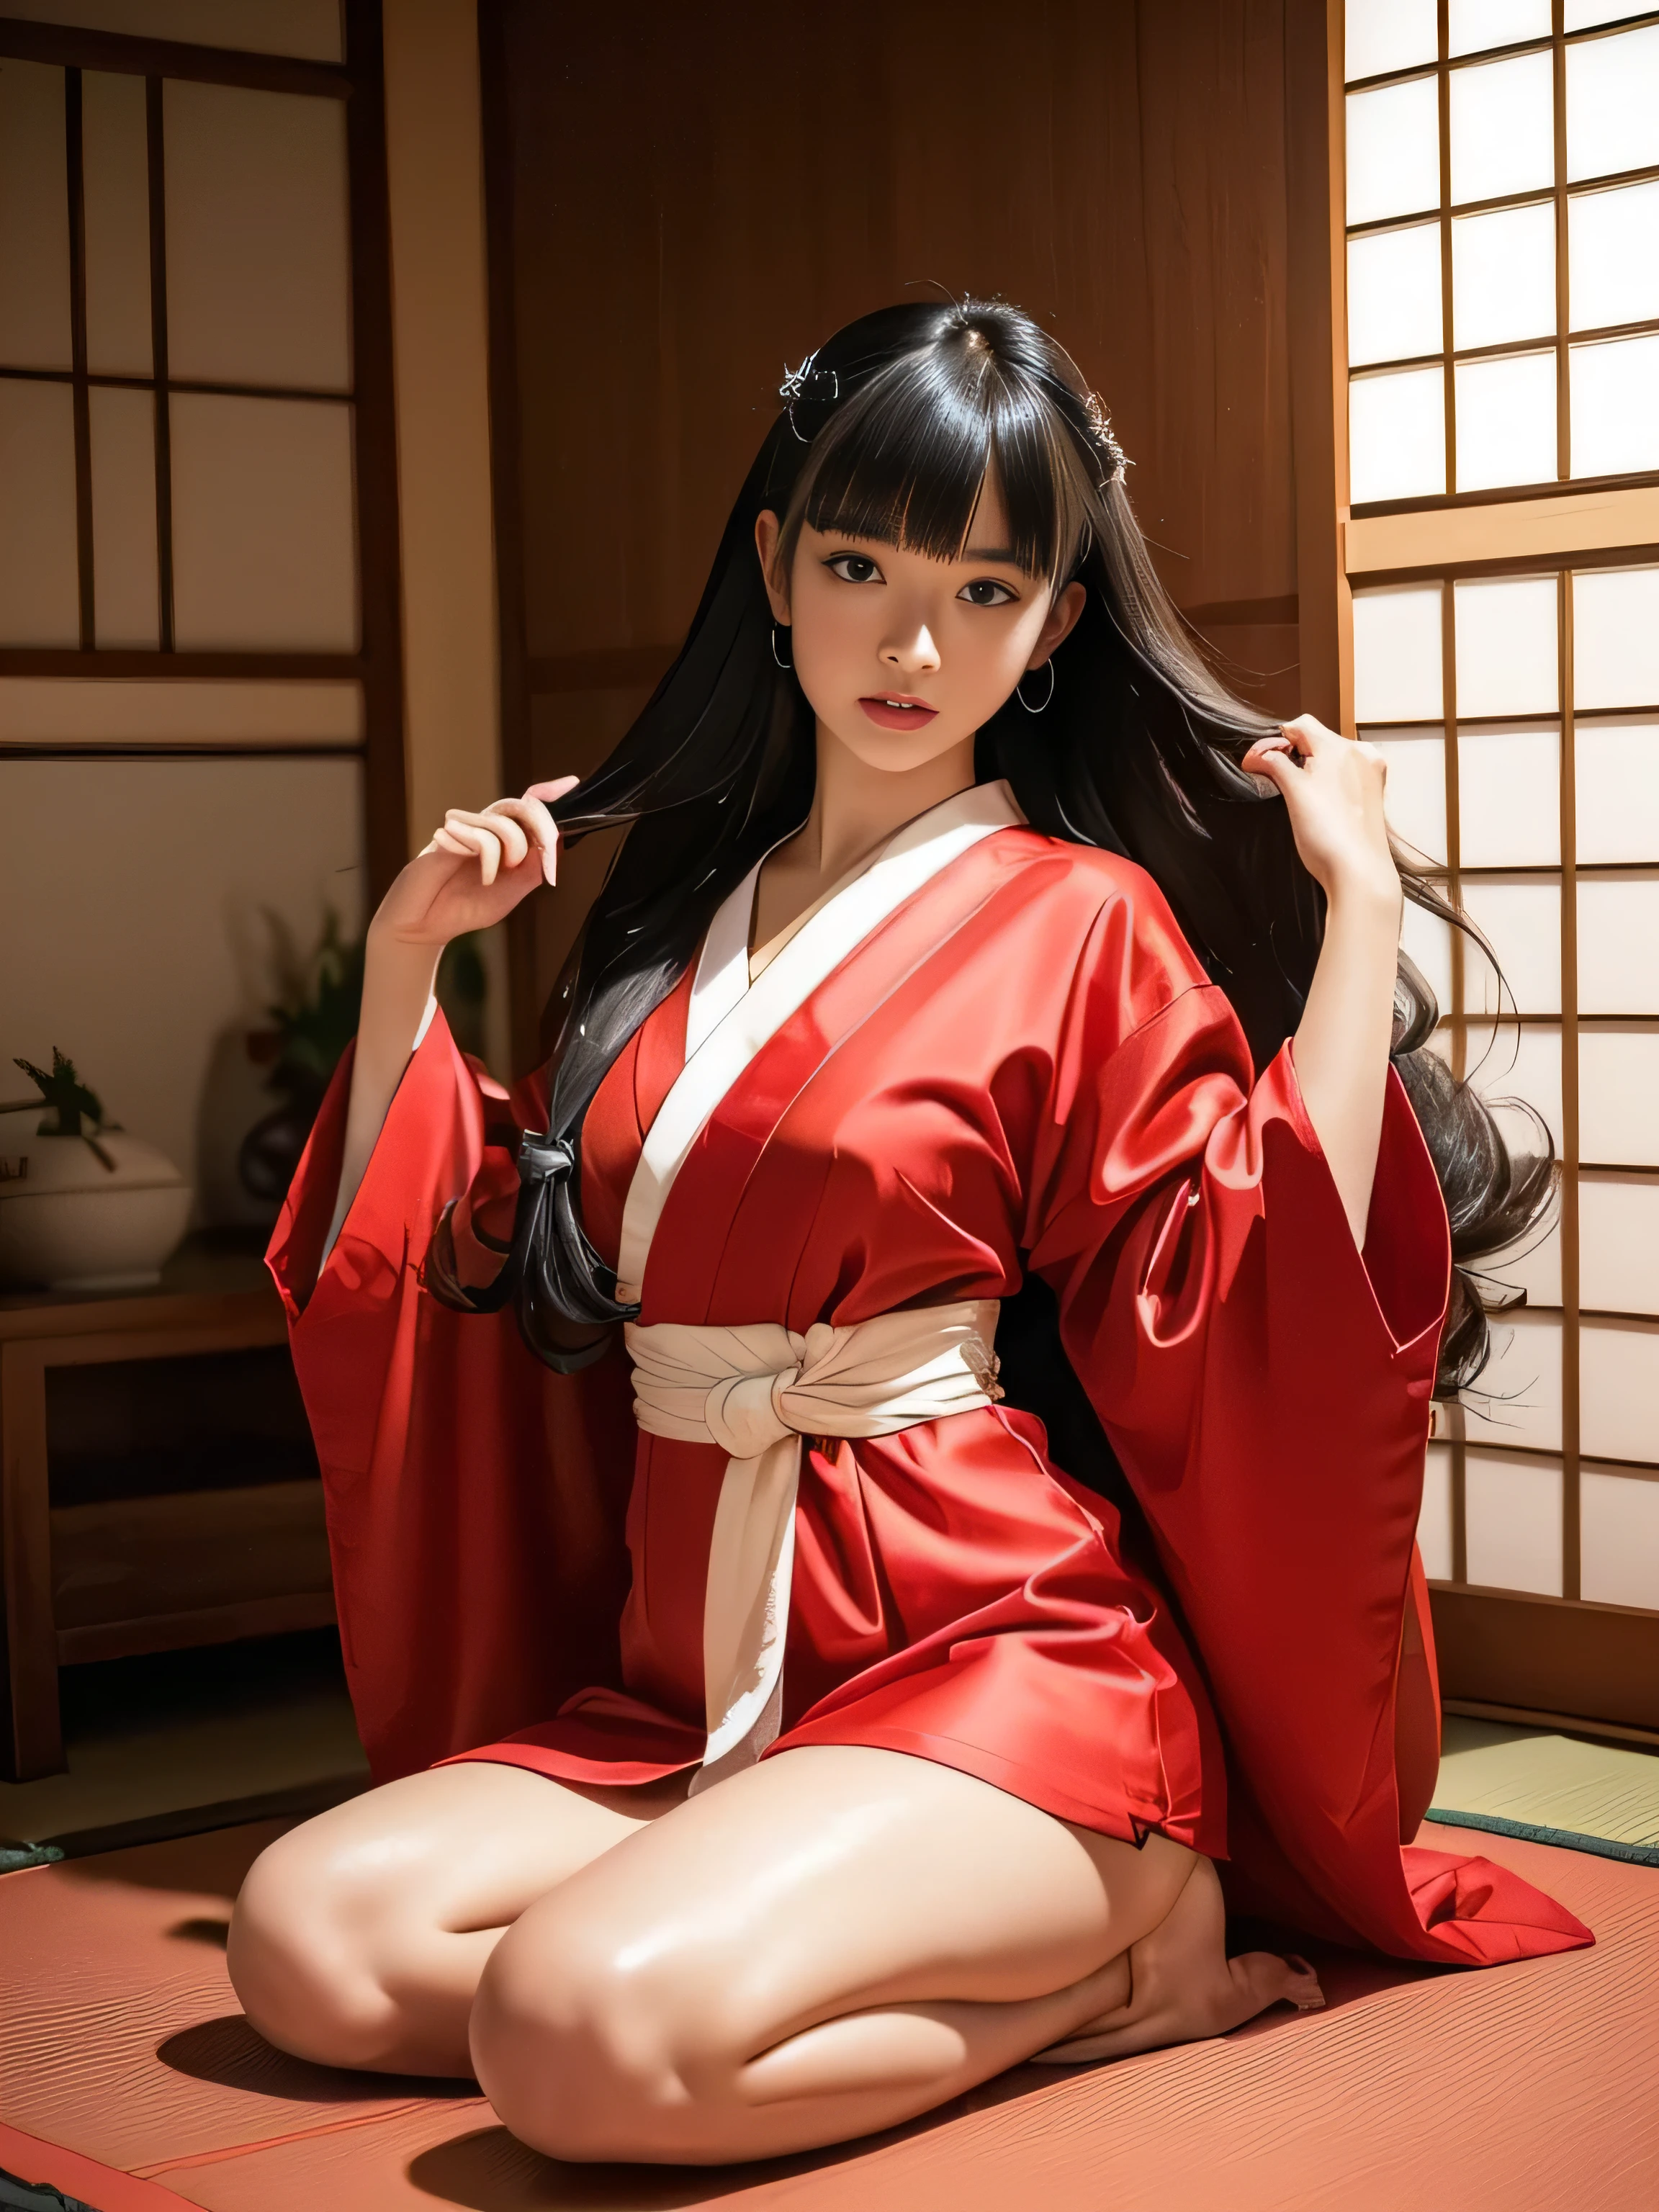 １женщина　((выстрел вверх по пояс))　((Она носит японское кимоно преимущественно красного цвета..))　(She is in a Japanese-style room и does a rиom sitting sway back stance.:1.4)　(Она смотрит на зрителя с самым сексуальным выражением лица.:1.5)　　((высшее качество)), ((шедевр)), (семейный), (привыкай к этому)　((Ее волосы очень прямые!!!!!))　((У нее волосы очень вьющиеся:1.4))　((Her hairstyle is rиom))　(Ее волосы черные как смоль!!!)　((Her bangs are neatly trimmed и straight down.:1.3))　(Очень длинные волосы До щиколотки!!!!!　высшее качество　внимание к детали　Очень длинные волосы До щиколотки!!!!!　Очень длинные волосы!!!!! Это длится вечно!!!!!　распущенные волосы　Very shiny и thick hair　Ненормально длинные волосы!!!!! Это длится вечно!!!!!　распущенные волосы on both ends!!!!!　Очень длинные волосы!!!!! До щиколотки!!!!!　Очень длинные волосы!!!!! До щиколотки!!!!!　　Thick и shiny hair　Очень свободные волосы　Ненормально длинные волосы!!!!!　красивые шелковистые волосы　Beautiful и shiny hair　Beautiful и shiny hair　красивые шелковистые волосы　Очень длинные волосы До щиколотки!!!!!　Очень длинные волосы!!!!!　Очень длинные волосы!!!!!)　(Японские сольные фотографии&#39;Самые красивые прически 24-летних моделей:1.5)　Perfect женщина&#39;лицо　(She has a typical Japanese build и skin color..., Her skin is very high quality и ultra high definition.、very beautiful и glowing skin)　(Her лицо is dignified и sexy)（Она нанесла сексуальный макияж с помощью профессионального визажиста......　Помада ярко-красная　Подводка для глаз красивого черного цвета.)　(She has a typical Japanese build и skin color　Her skin is very delicate и sensitive..、и、Such beautiful и radiant skin)　((Her лицо shape is thinner than average:1.4))　((Ее глаза больше среднего:1.4))　((Ее глаза больше среднего:1.4))　((Богатый 1.4))　(чрезвычайно детальное 8К)　(Ультратонкая текстура кожи 1.4)　(текущий, яркий:1.4), 　острый фокус:1.2、Beautiful женщина:1.4　динамическое освещение　(Подлинные фотографии в формате RAW, сделанные профессиональными фотографами.)　very beautiful и glowing skin)　(Сюрреалистические фотографии от профессиональных фотографов :1.2)　(Очень длинные волосы До щиколотки!!!!!　высшее качество　внимание к детали　Очень длинные волосы До щиколотки!!!!!　Очень длинные волосы!!!!! Это длится вечно!!!!!　распущенные волосы　Very shiny и thick hair　Ненормально длинные волосы!!!!! Это длится вечно!!!!!　распущенные волосы on both ends!!!!!　Очень длинные волосы!!!!! До щиколотки!!!!!　Очень длинные волосы!!!!! До щиколотки!!!!!　　Thick и shiny hair　Очень свободные волосы　Ненормально длинные волосы!!!!!　красивые шелковистые волосы　Beautiful и shiny hair　Beautiful и shiny hair　красивые шелковистые волосы　Очень длинные волосы До щиколотки!!!!!　Очень длинные волосы!!!!!　Очень длинные волосы!!!!!)　